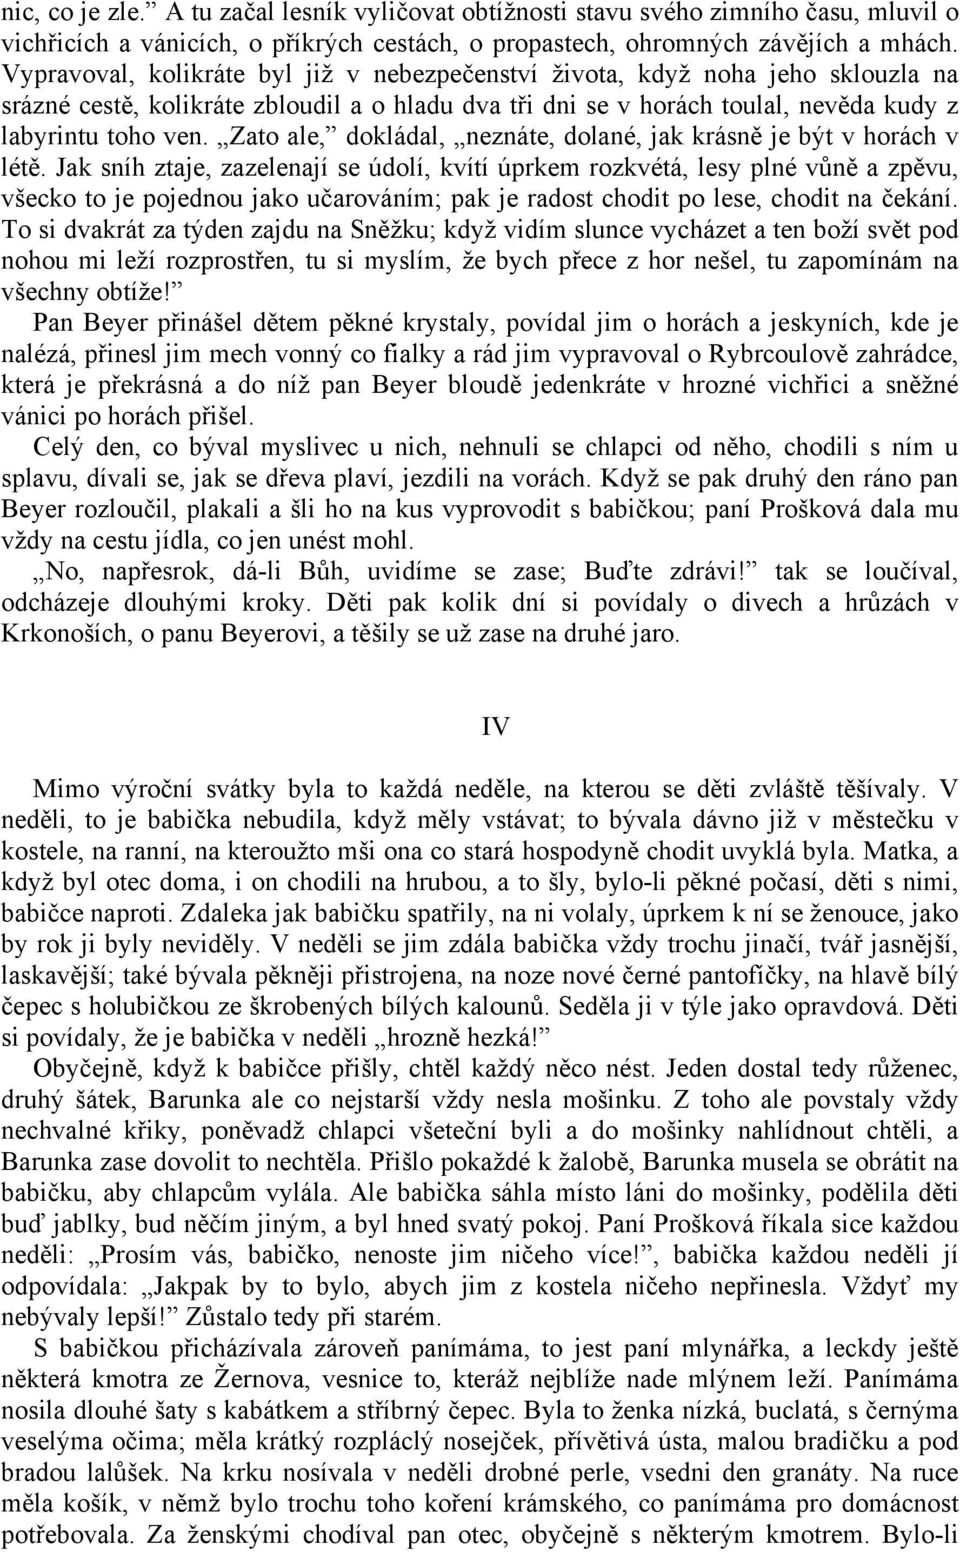 Božena Němcová. Babička Obrazy venkovského života (1855) - PDF Free Download